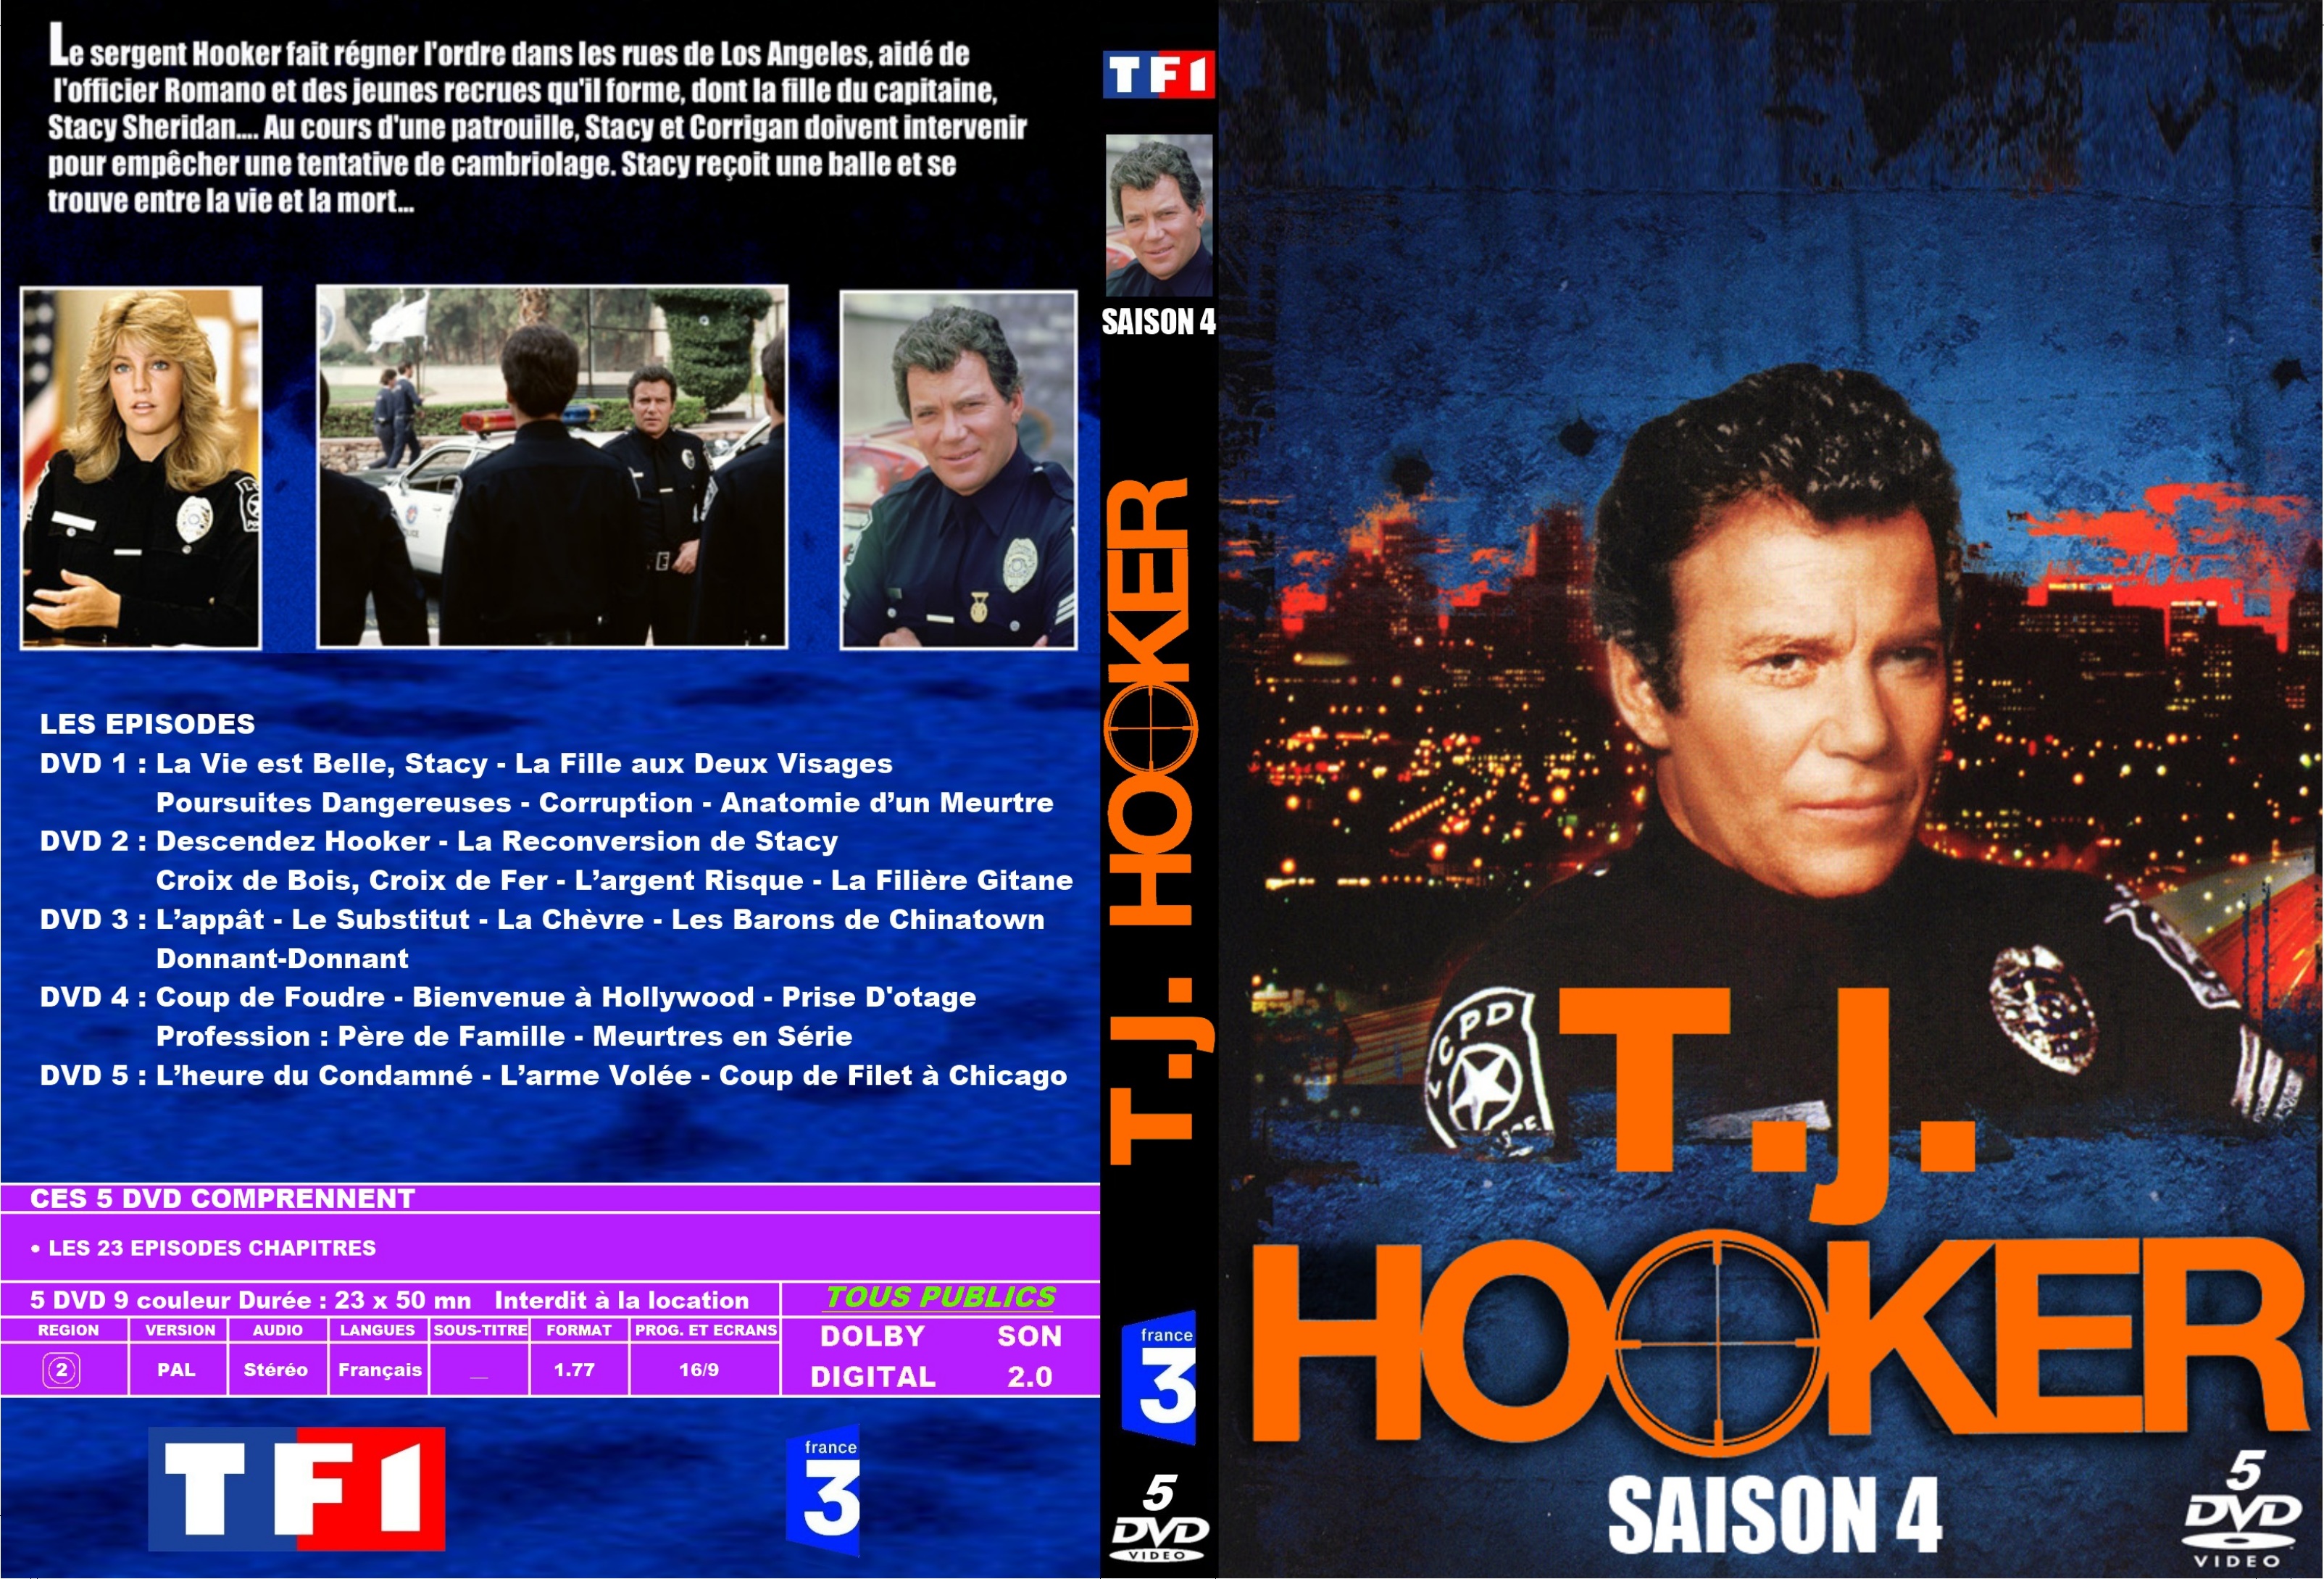 Jaquette DVD Hooker Saison 4 custom